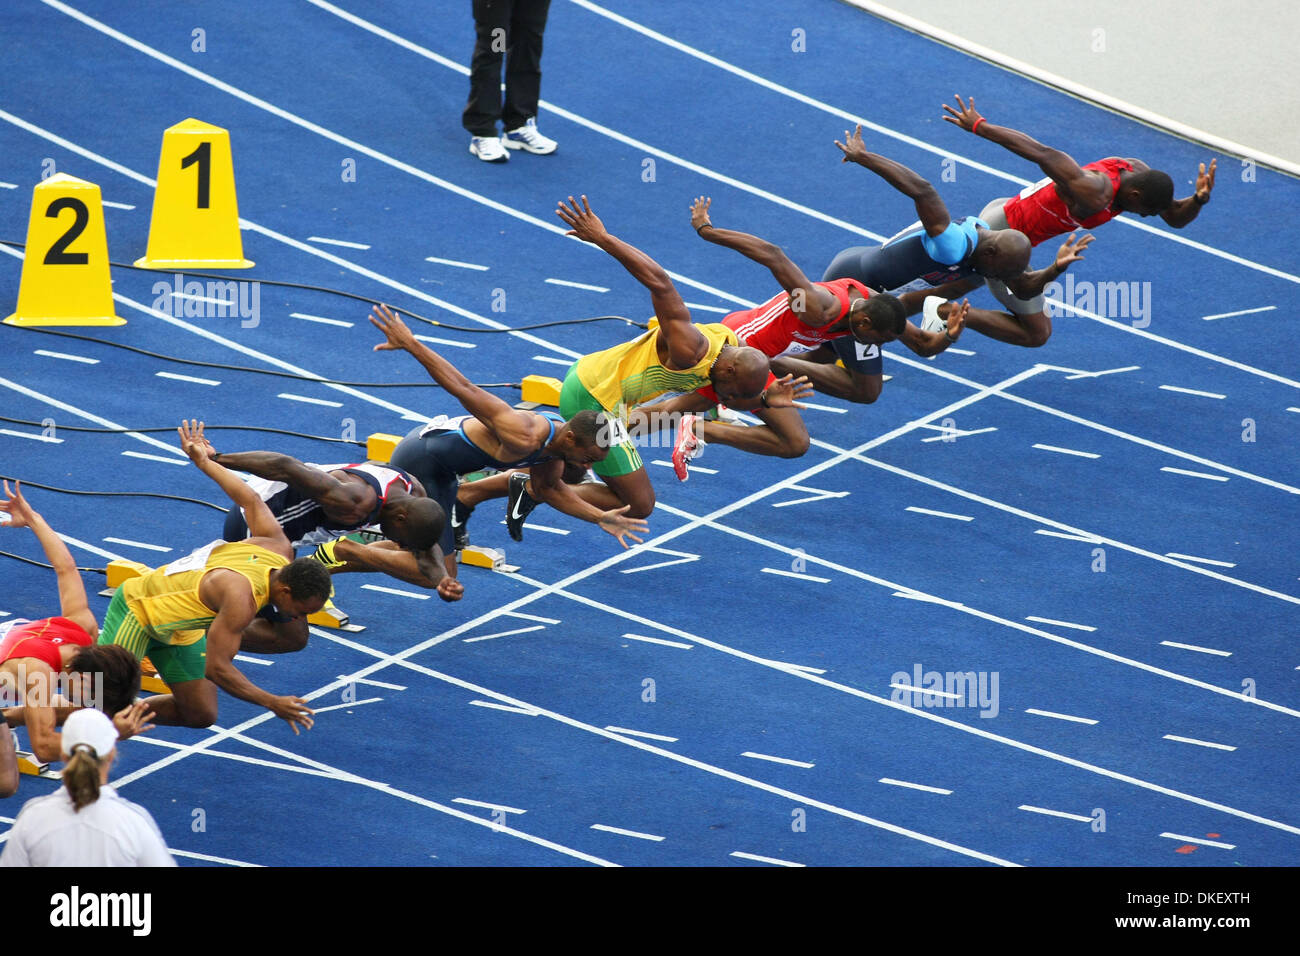 Aug 16, 2009 - Berlino, Germania - 100m Mens semifinale durante il dodicesimo IAAF Campionati del Mondo di atletica leggera tenutosi a Stadio Olimpico di Berlino. (Credito Immagine: © Aleksander V. Chernykh/PhotoXpress/ZUMA Press) Foto Stock